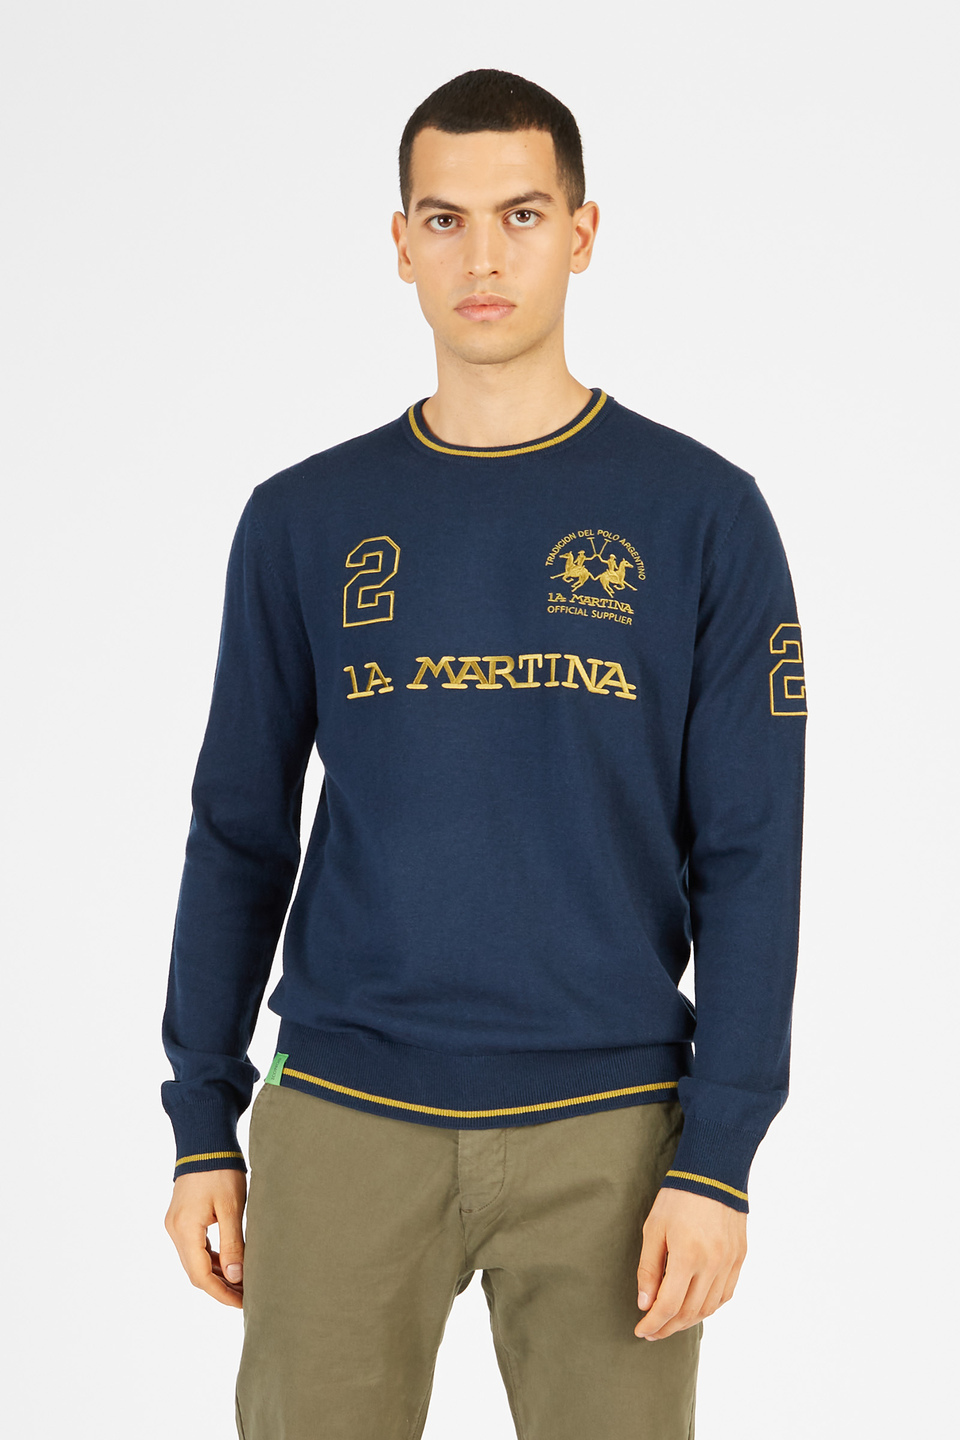 Maglia tricot da uomo in misto cotone girocollo regular fit | La Martina - Official Online Shop